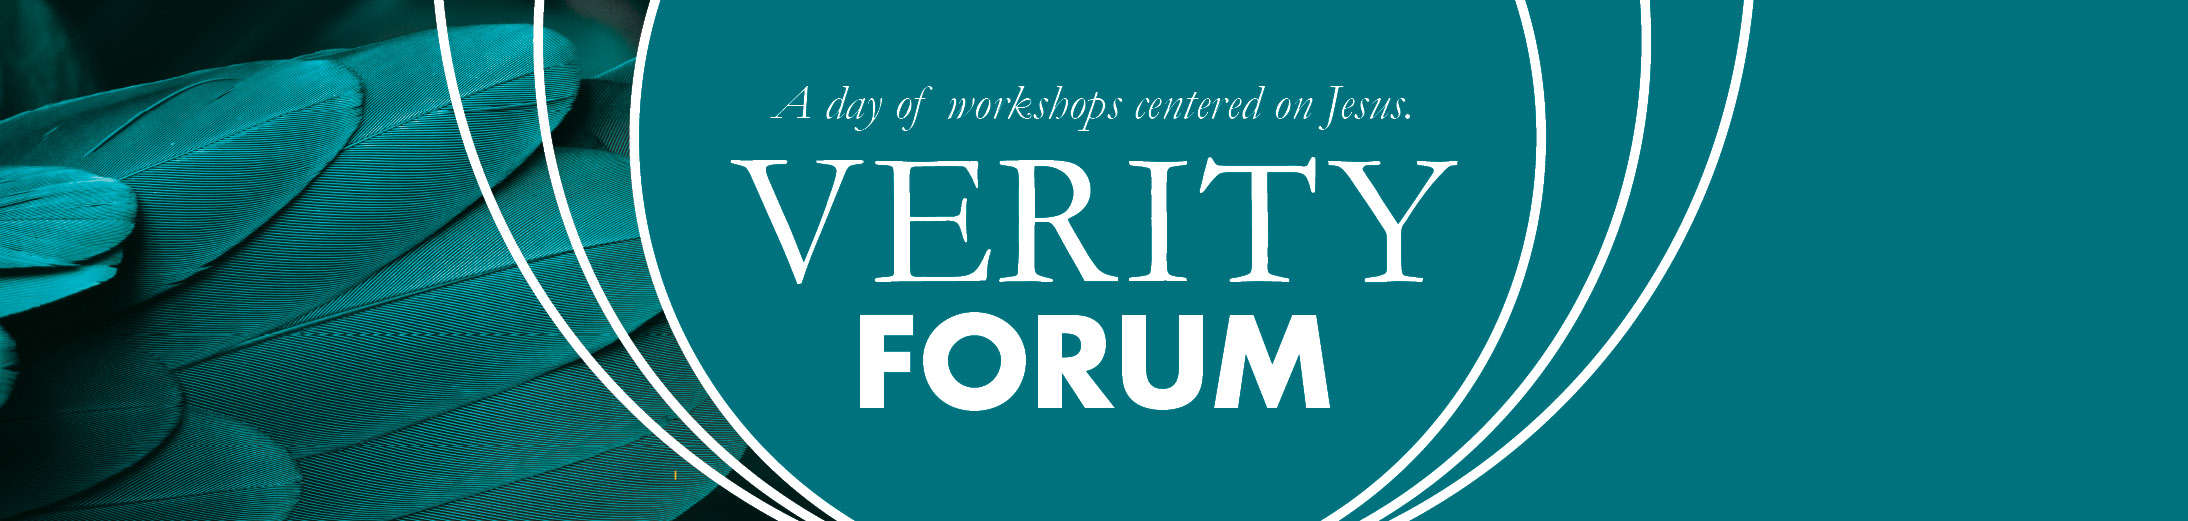 Verity Forum